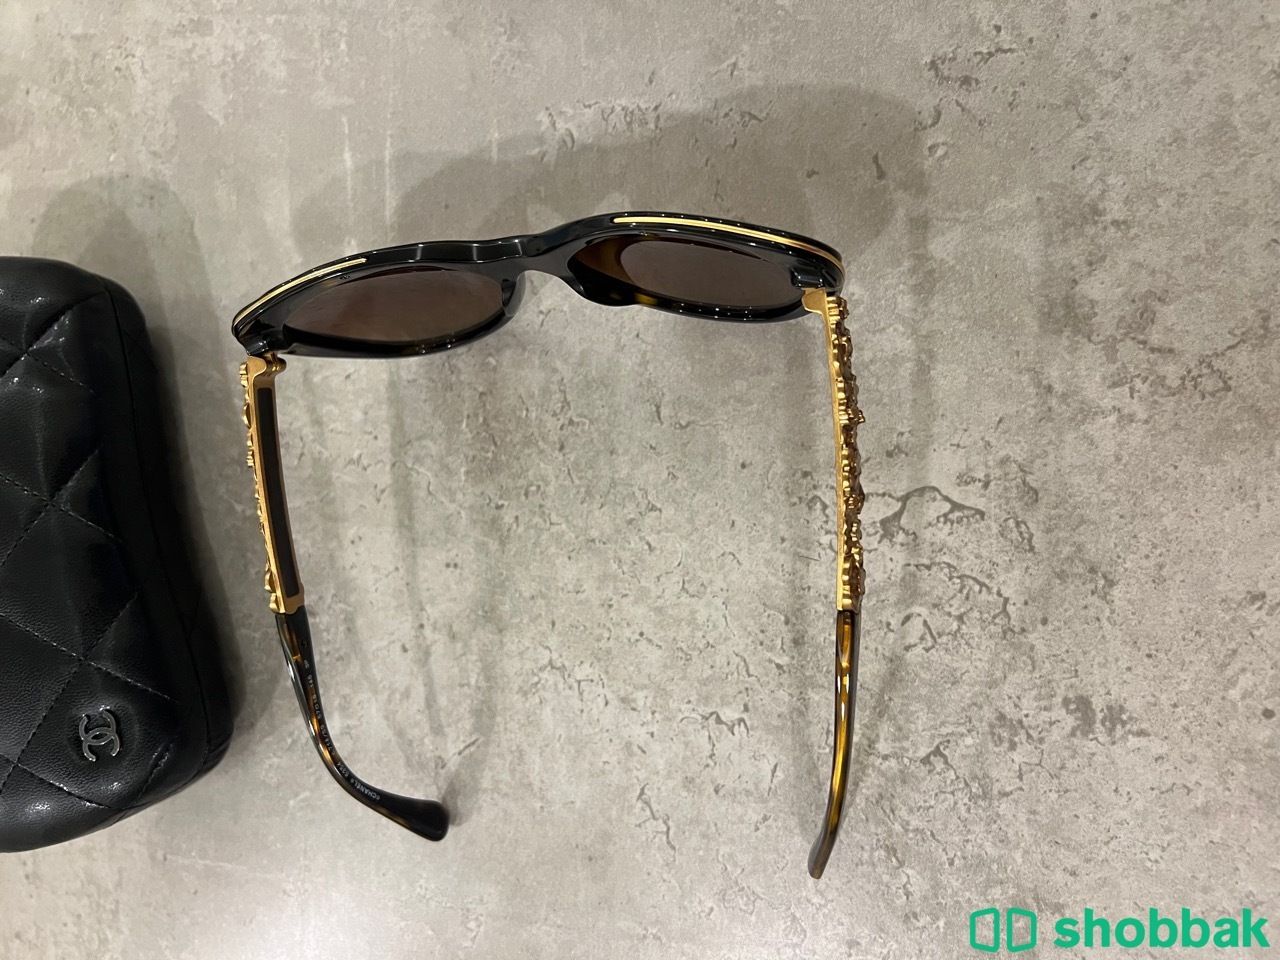 Chanel Sunglasses نظارات شانيل Shobbak Saudi Arabia